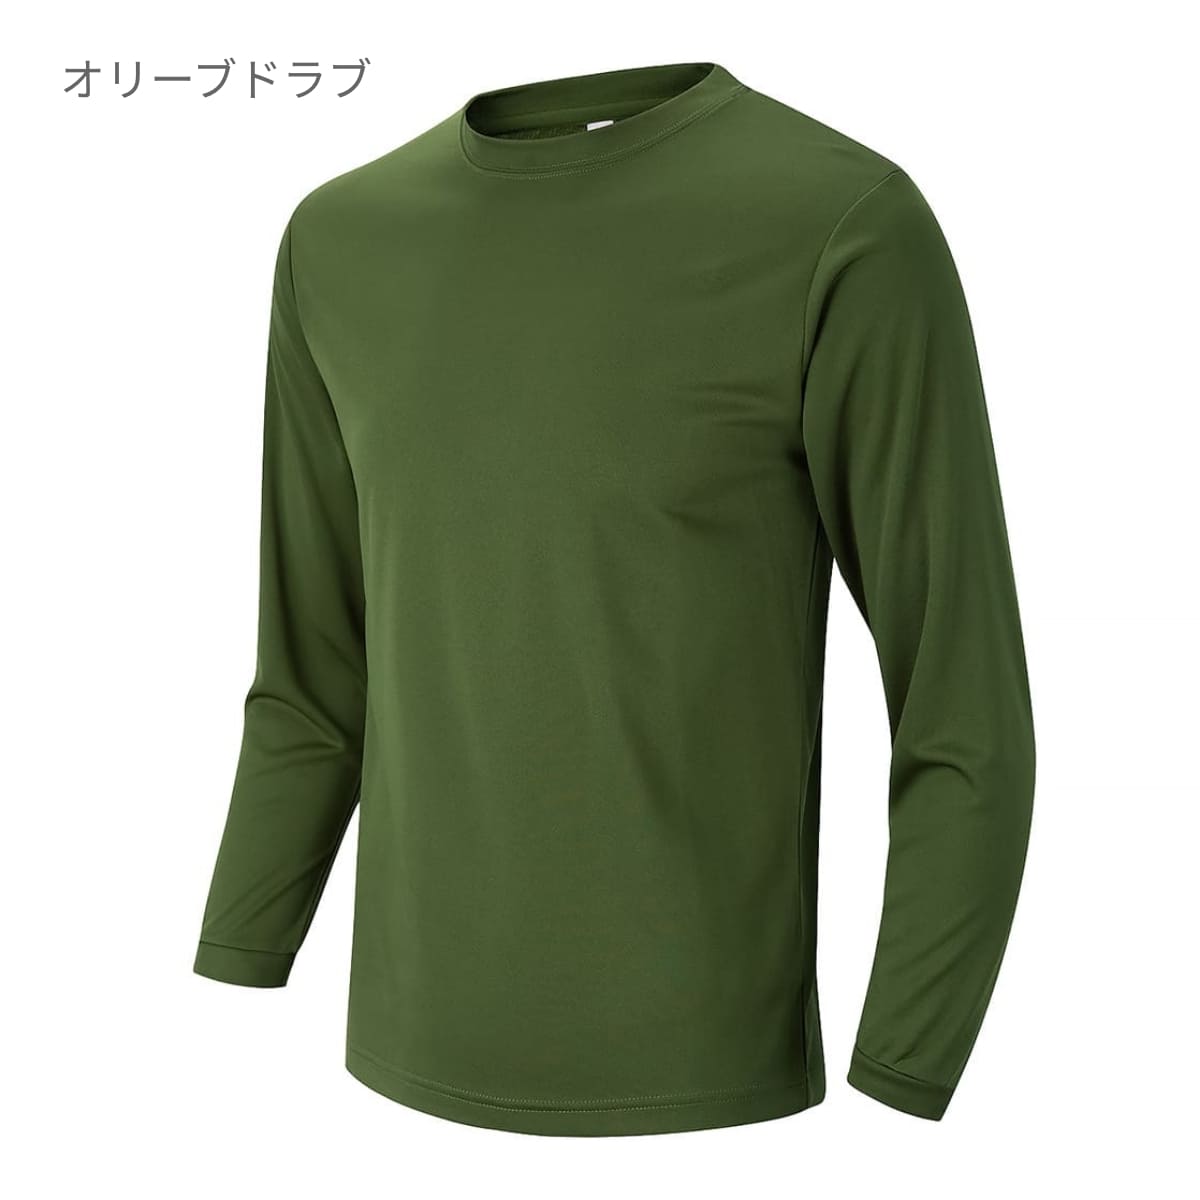 アースカラー長袖Tシャツ | ユニフォーム | 1枚 | P951 | ダークグレー